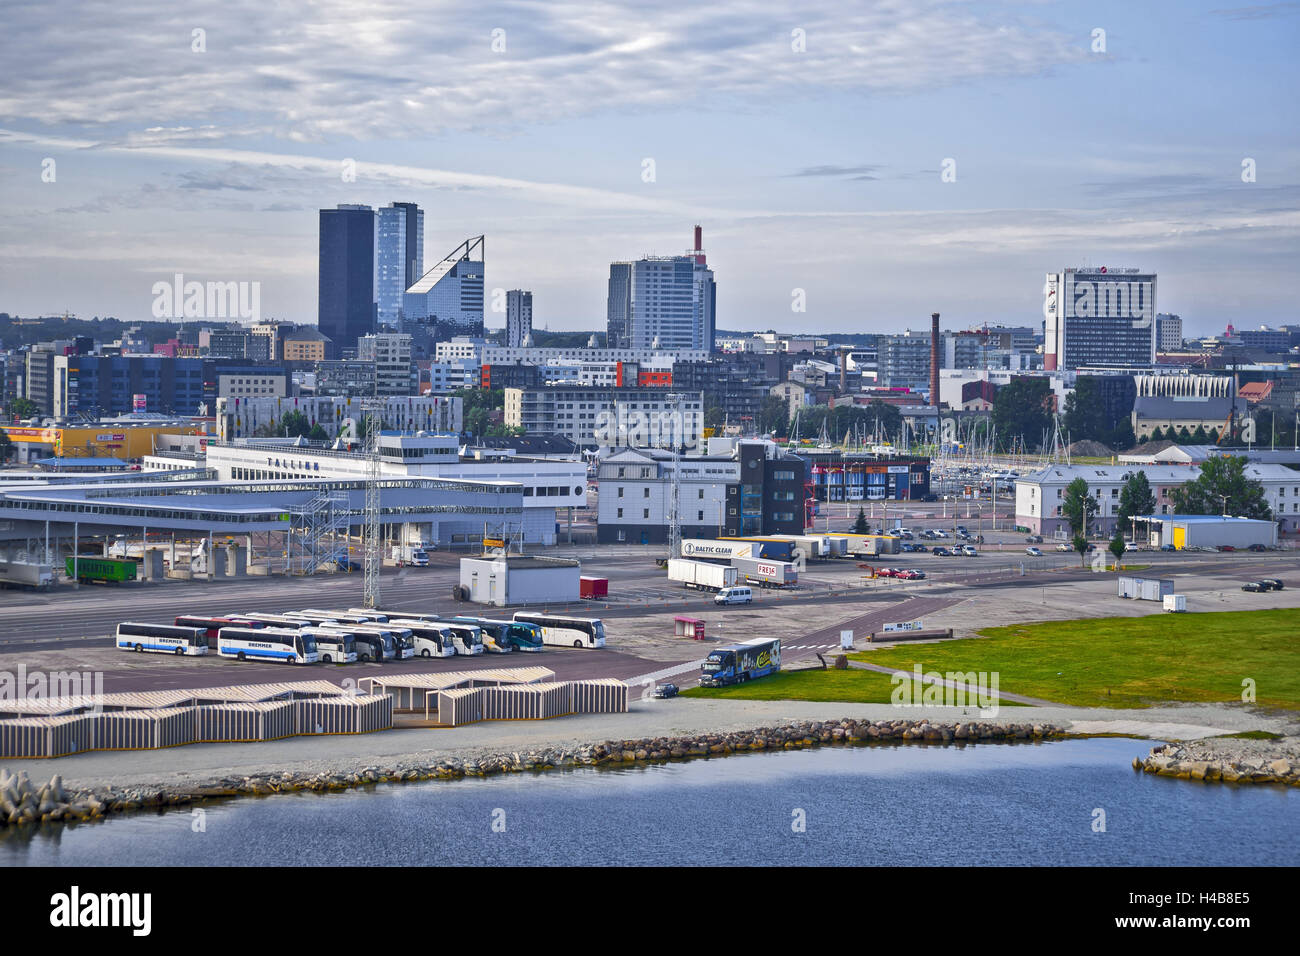 Estonia, Tallinn, town view Stock Photo